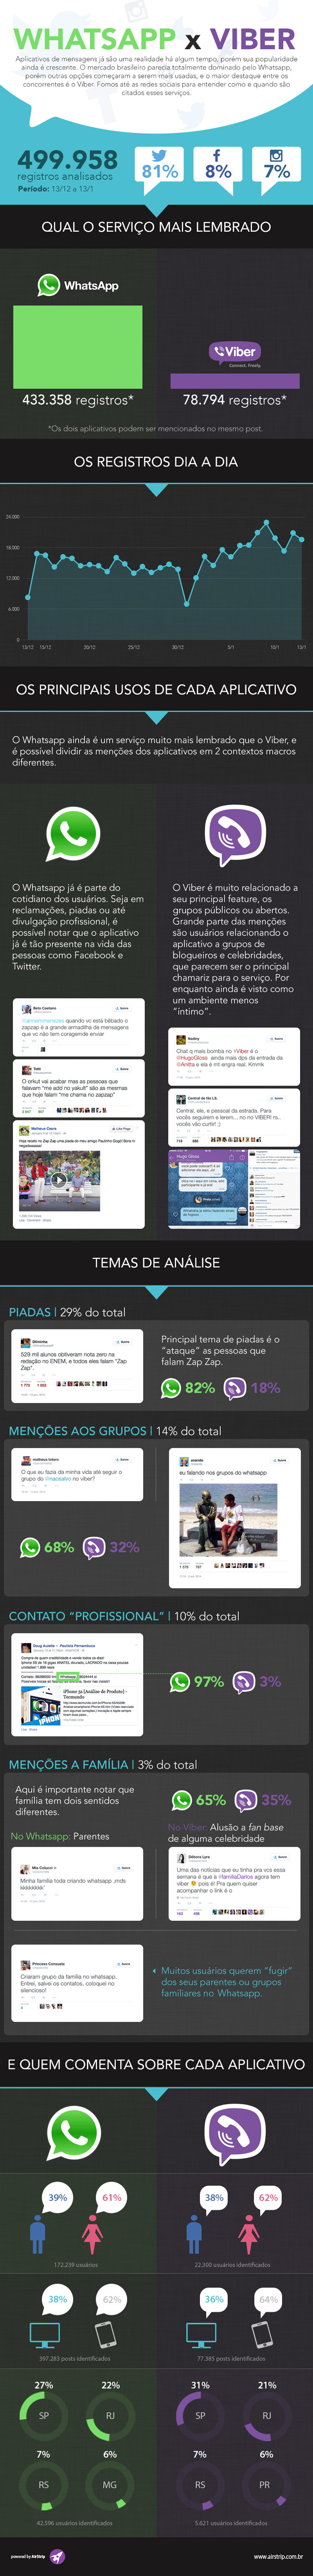 Mesmo com forte investimento no Brasil, Viber fica atrás do WhatsApp